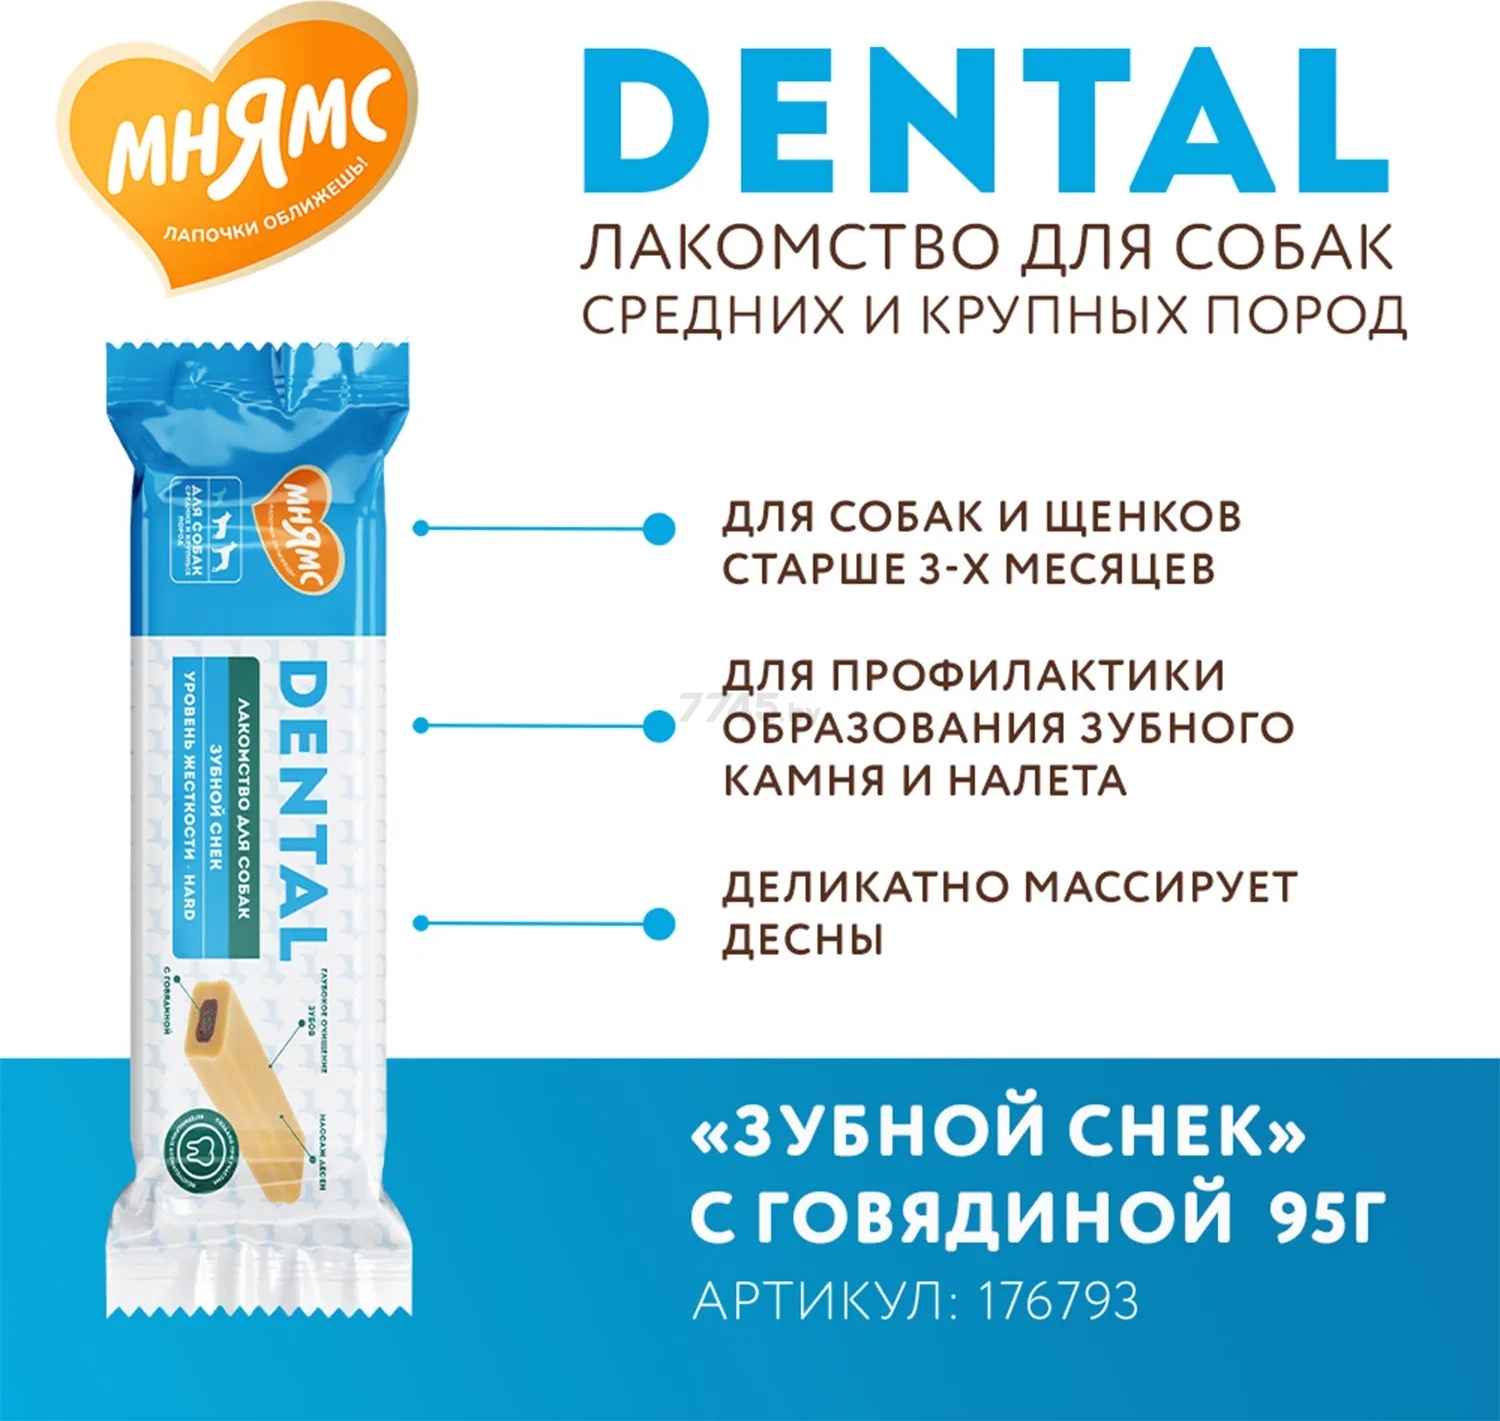 Лакомство для собак МНЯМС Dental Зубной снек говядина 95 г (176793) - Фото 3